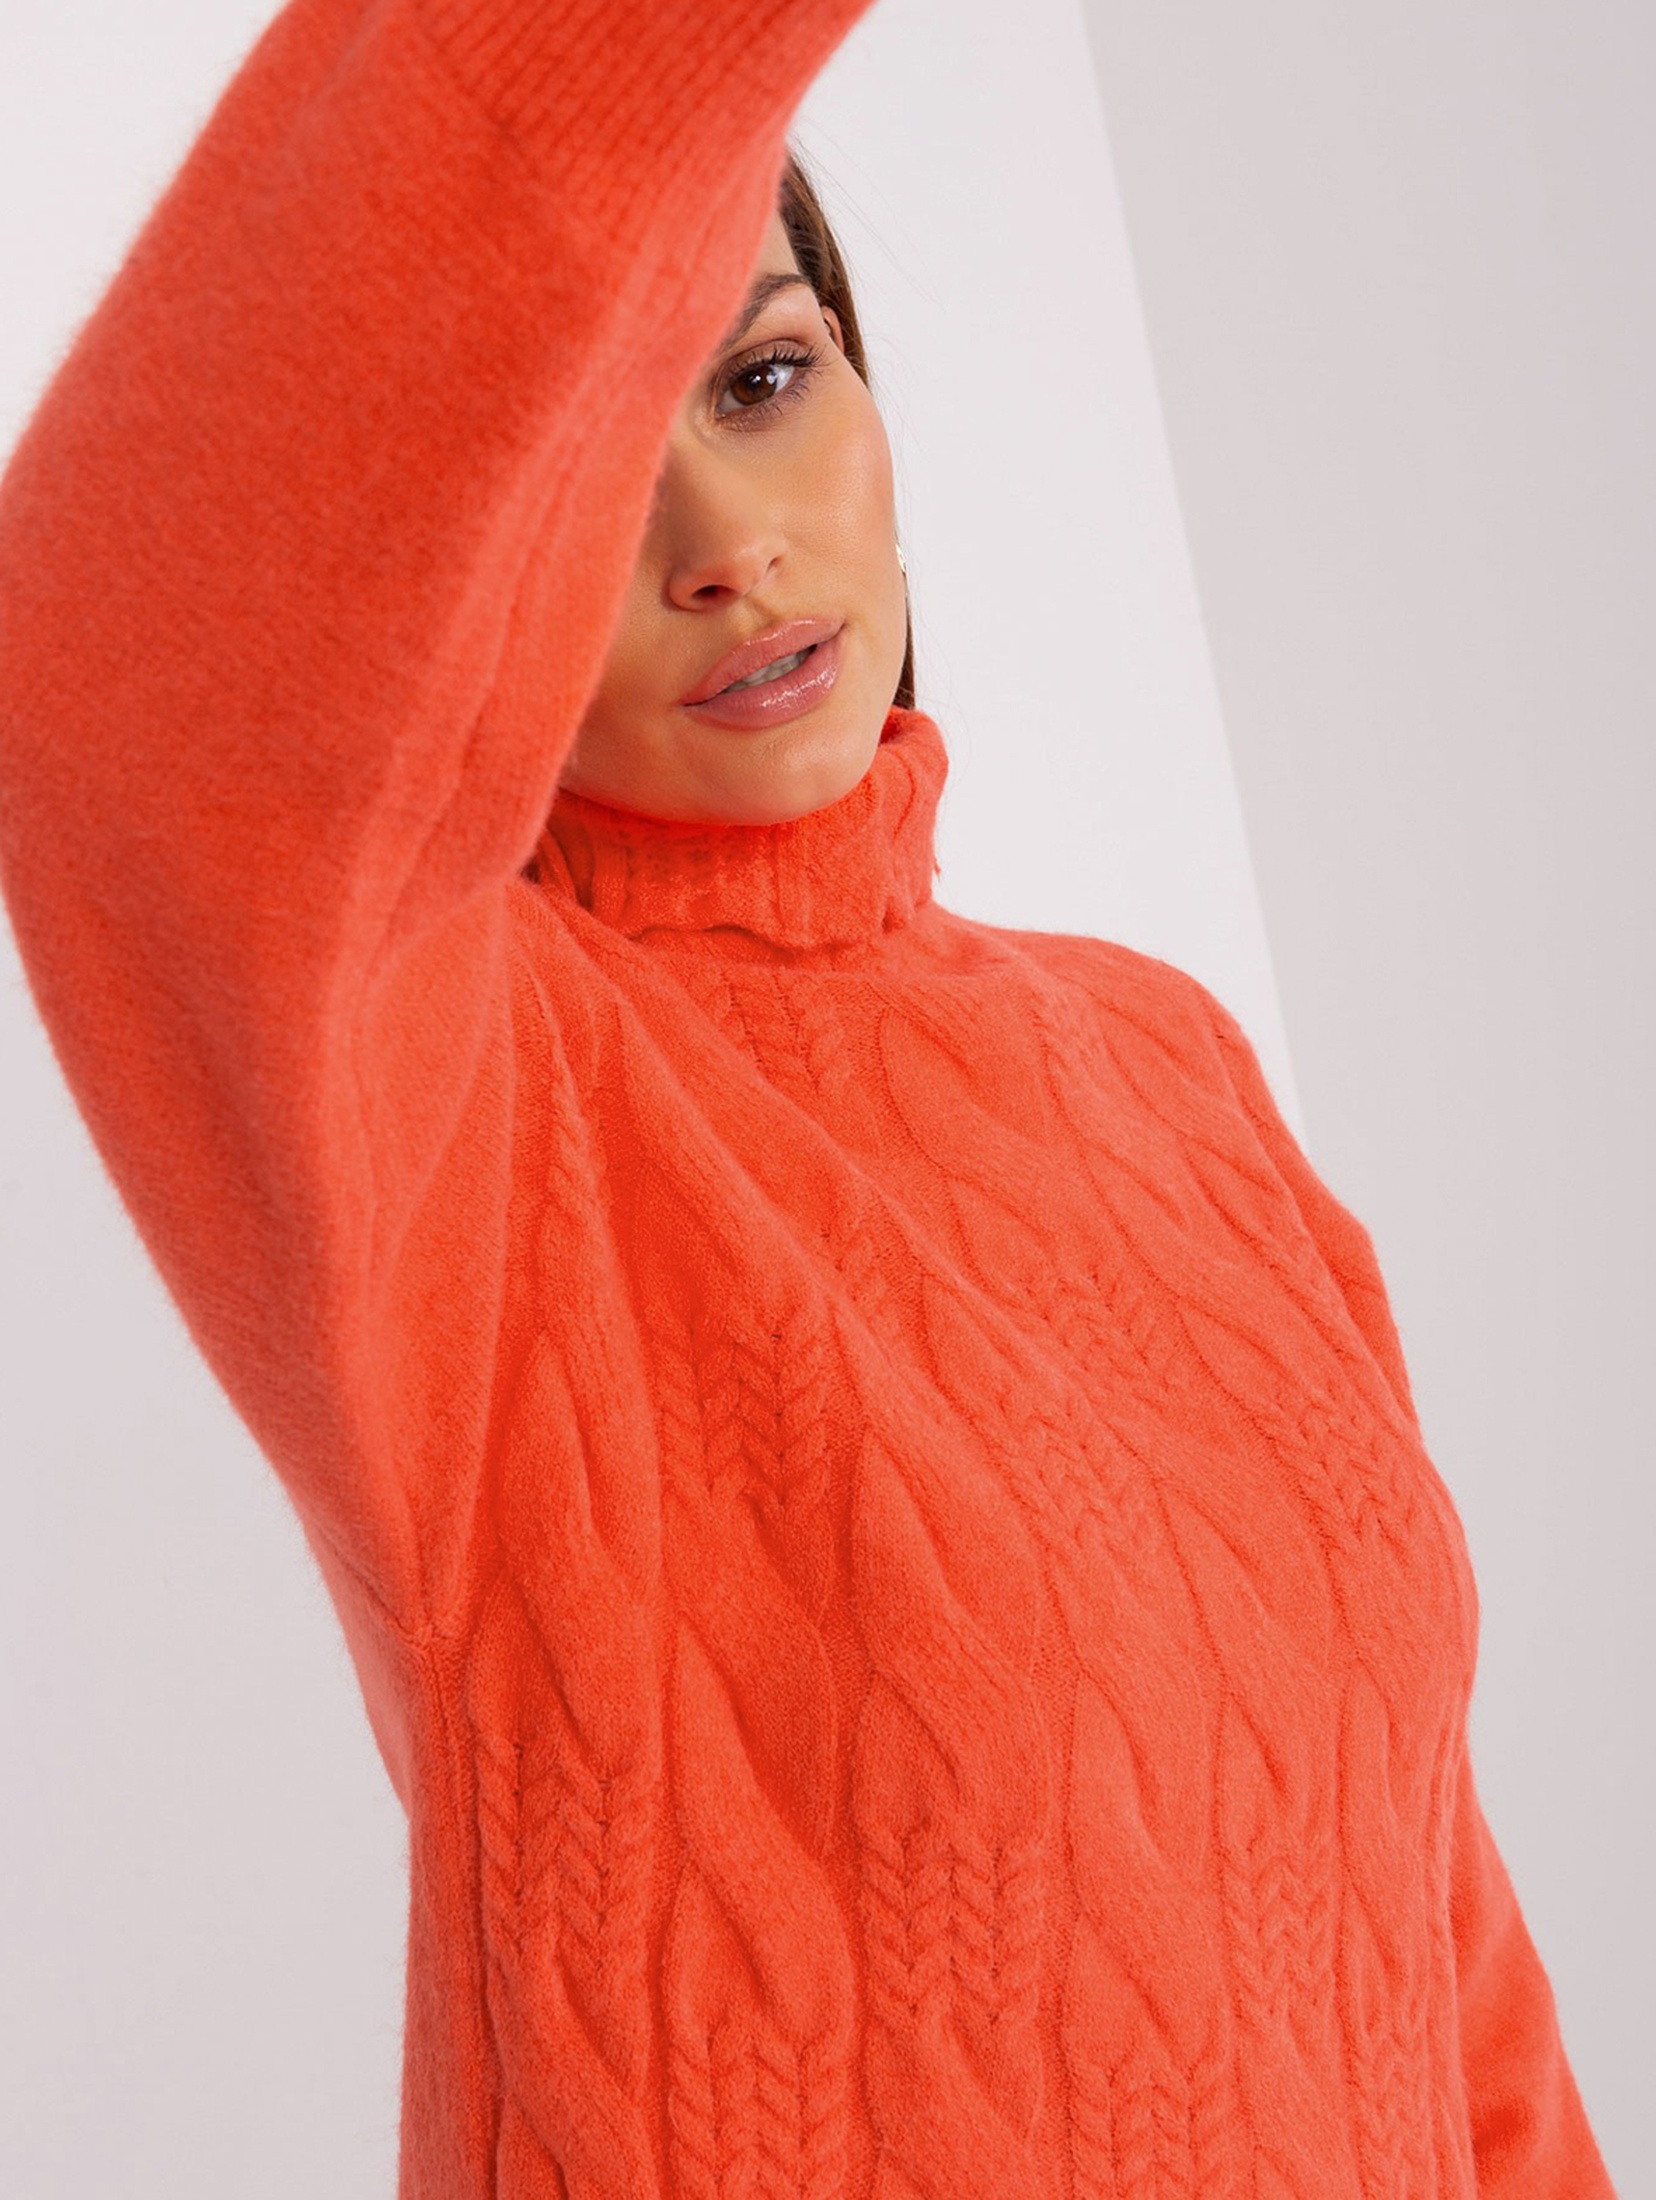 Damski sweter z golfem pomarańczowy